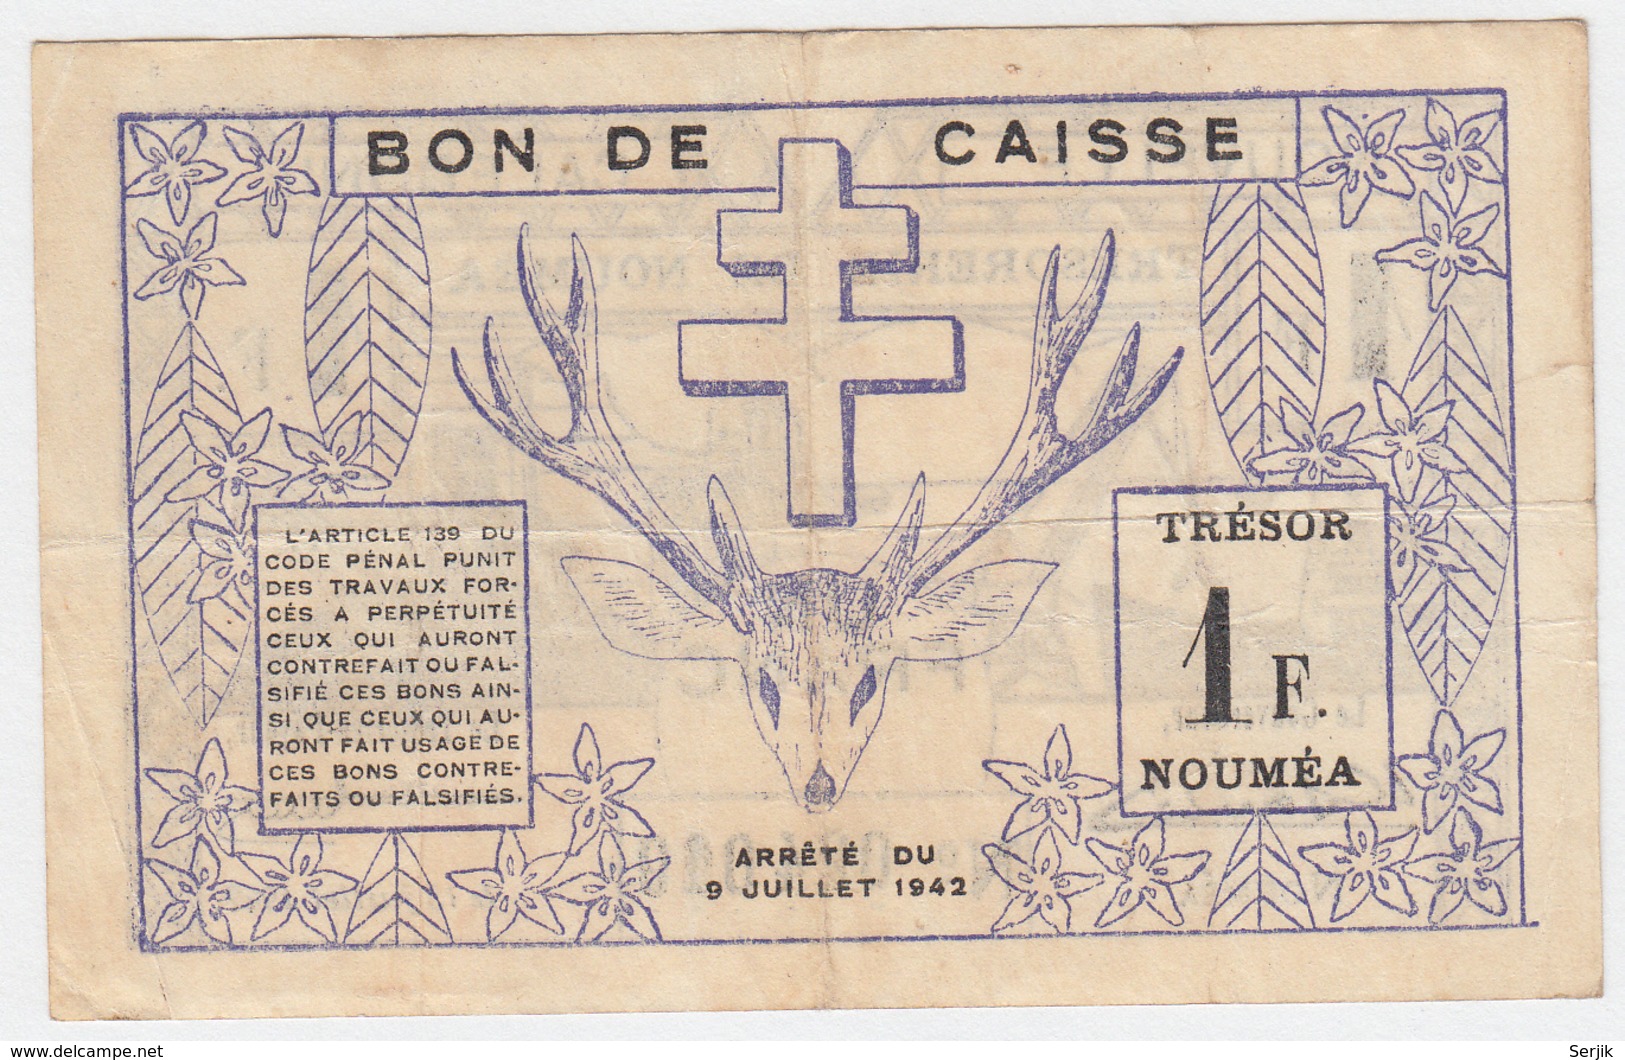 New Caledonia 1 Franc 1942 VF Pick 52 - Nouméa (Neukaledonien 1873-1985)